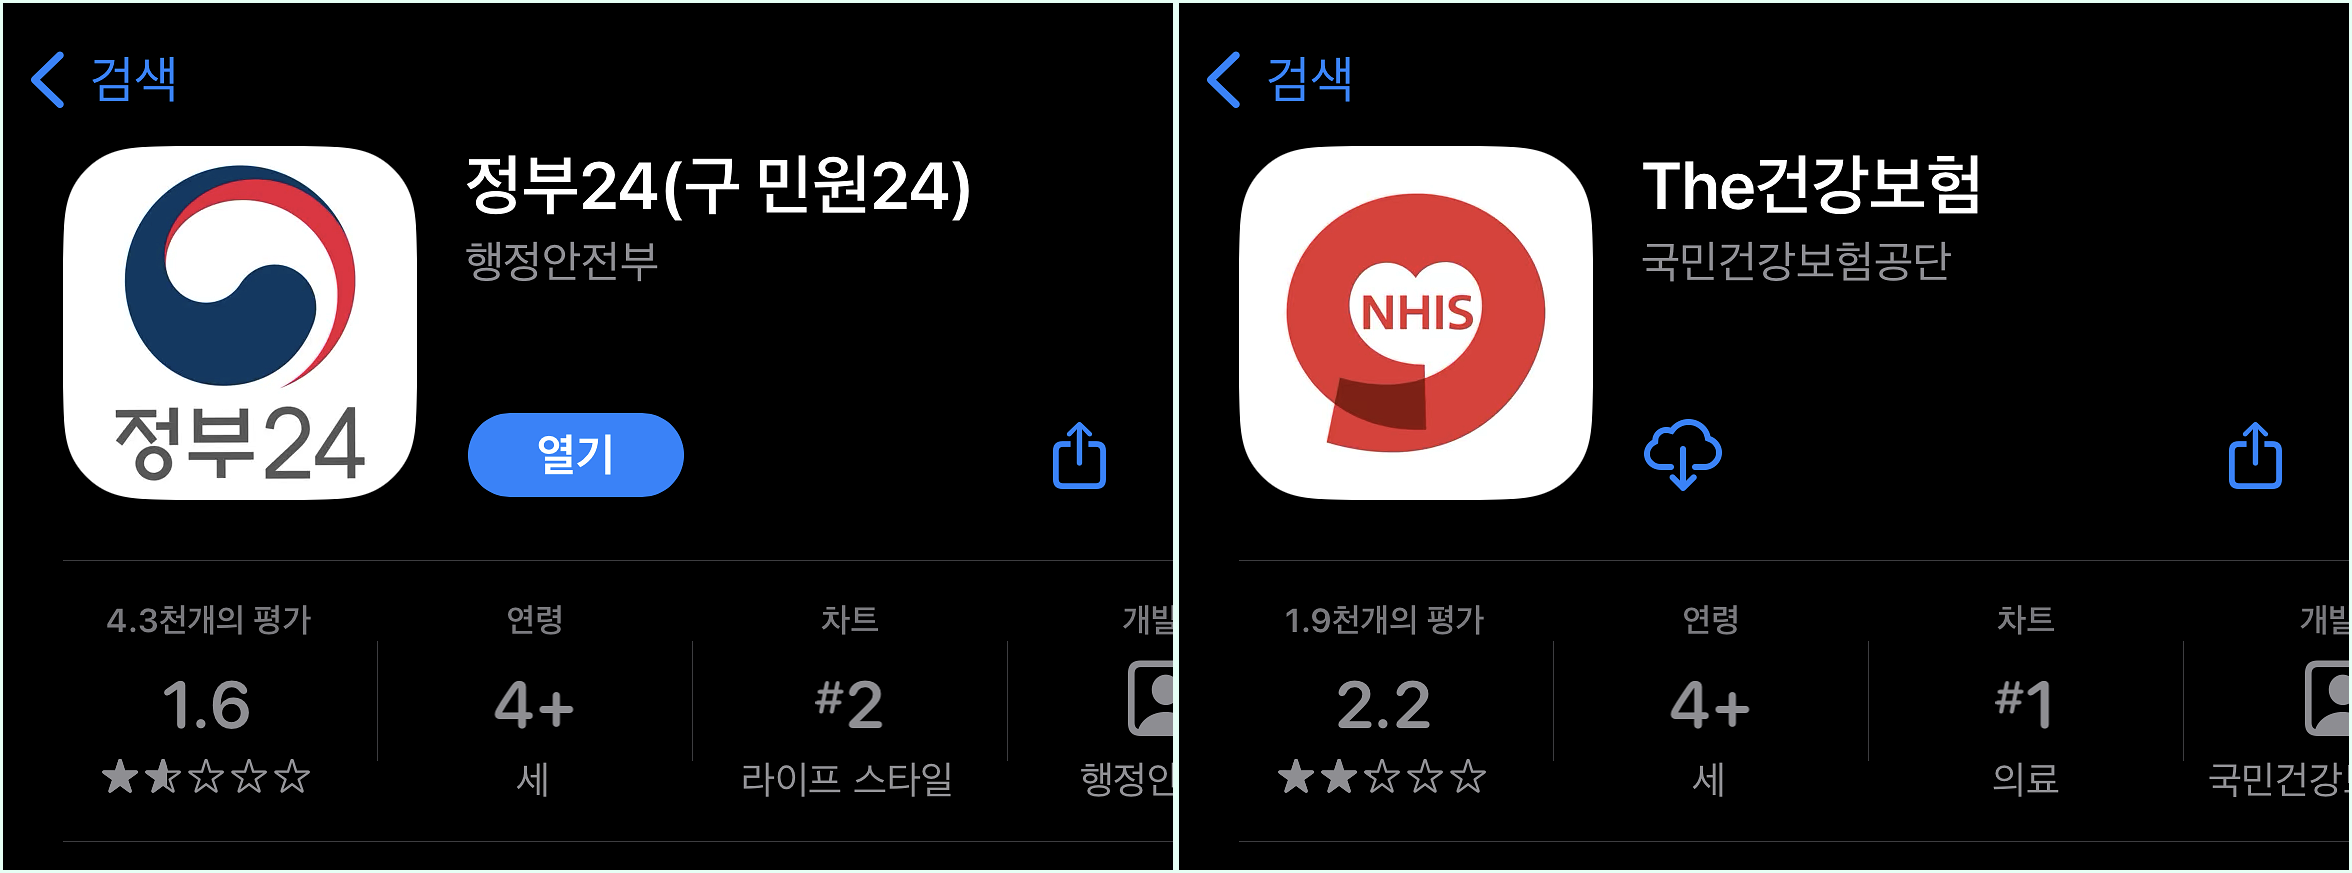 IOS의 앱스토어에서 확인할 수 있는 정부 24 앱과 The건강보험 앱